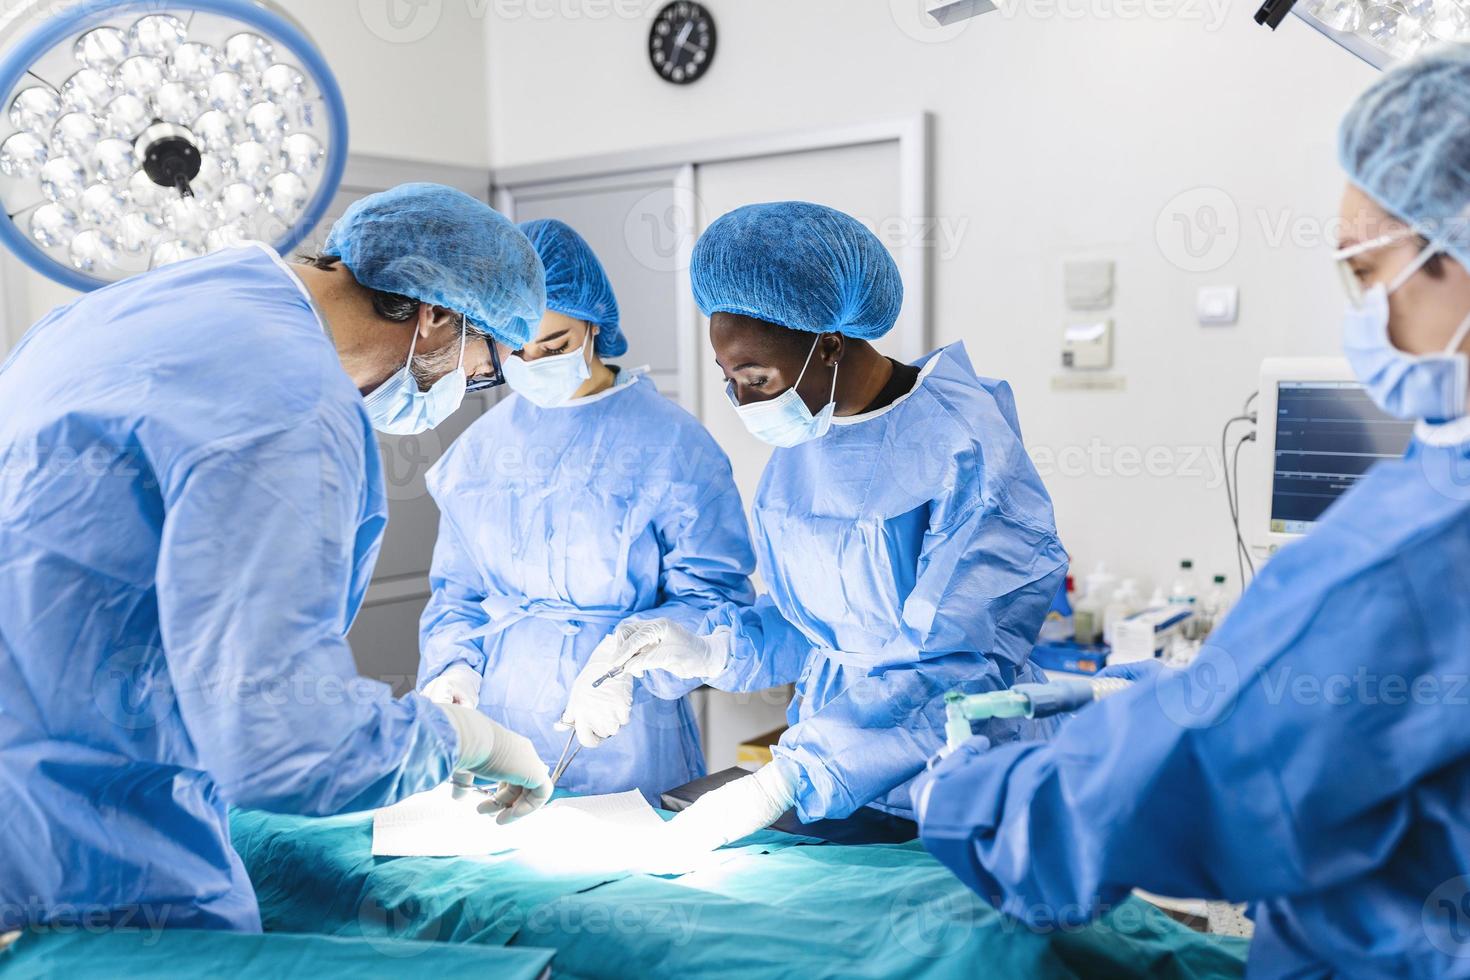 kirurgisk team utför kirurgi i modern drift teater, lag av doktorer koncentrering på en patient under en operation, team av doktorer arbetssätt tillsammans under en kirurgi i rörelse rum, foto